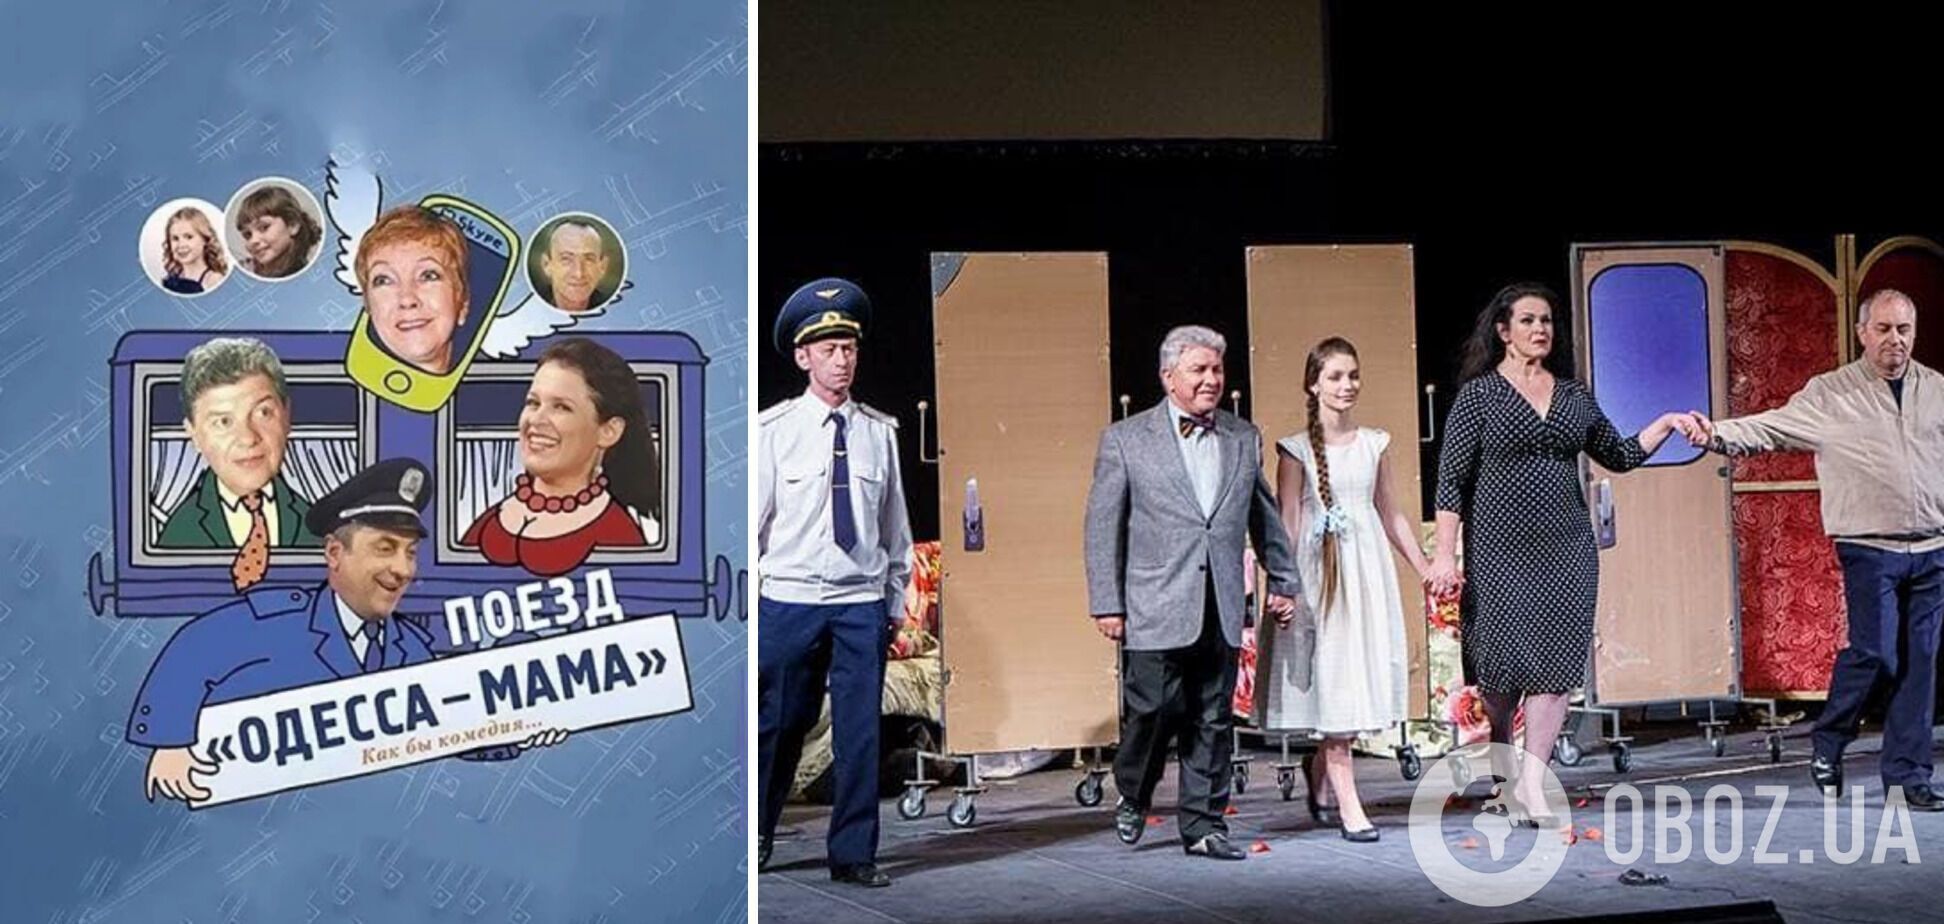 Руслана Писанка подвернула ногу и потеряла сознание на сцене театра